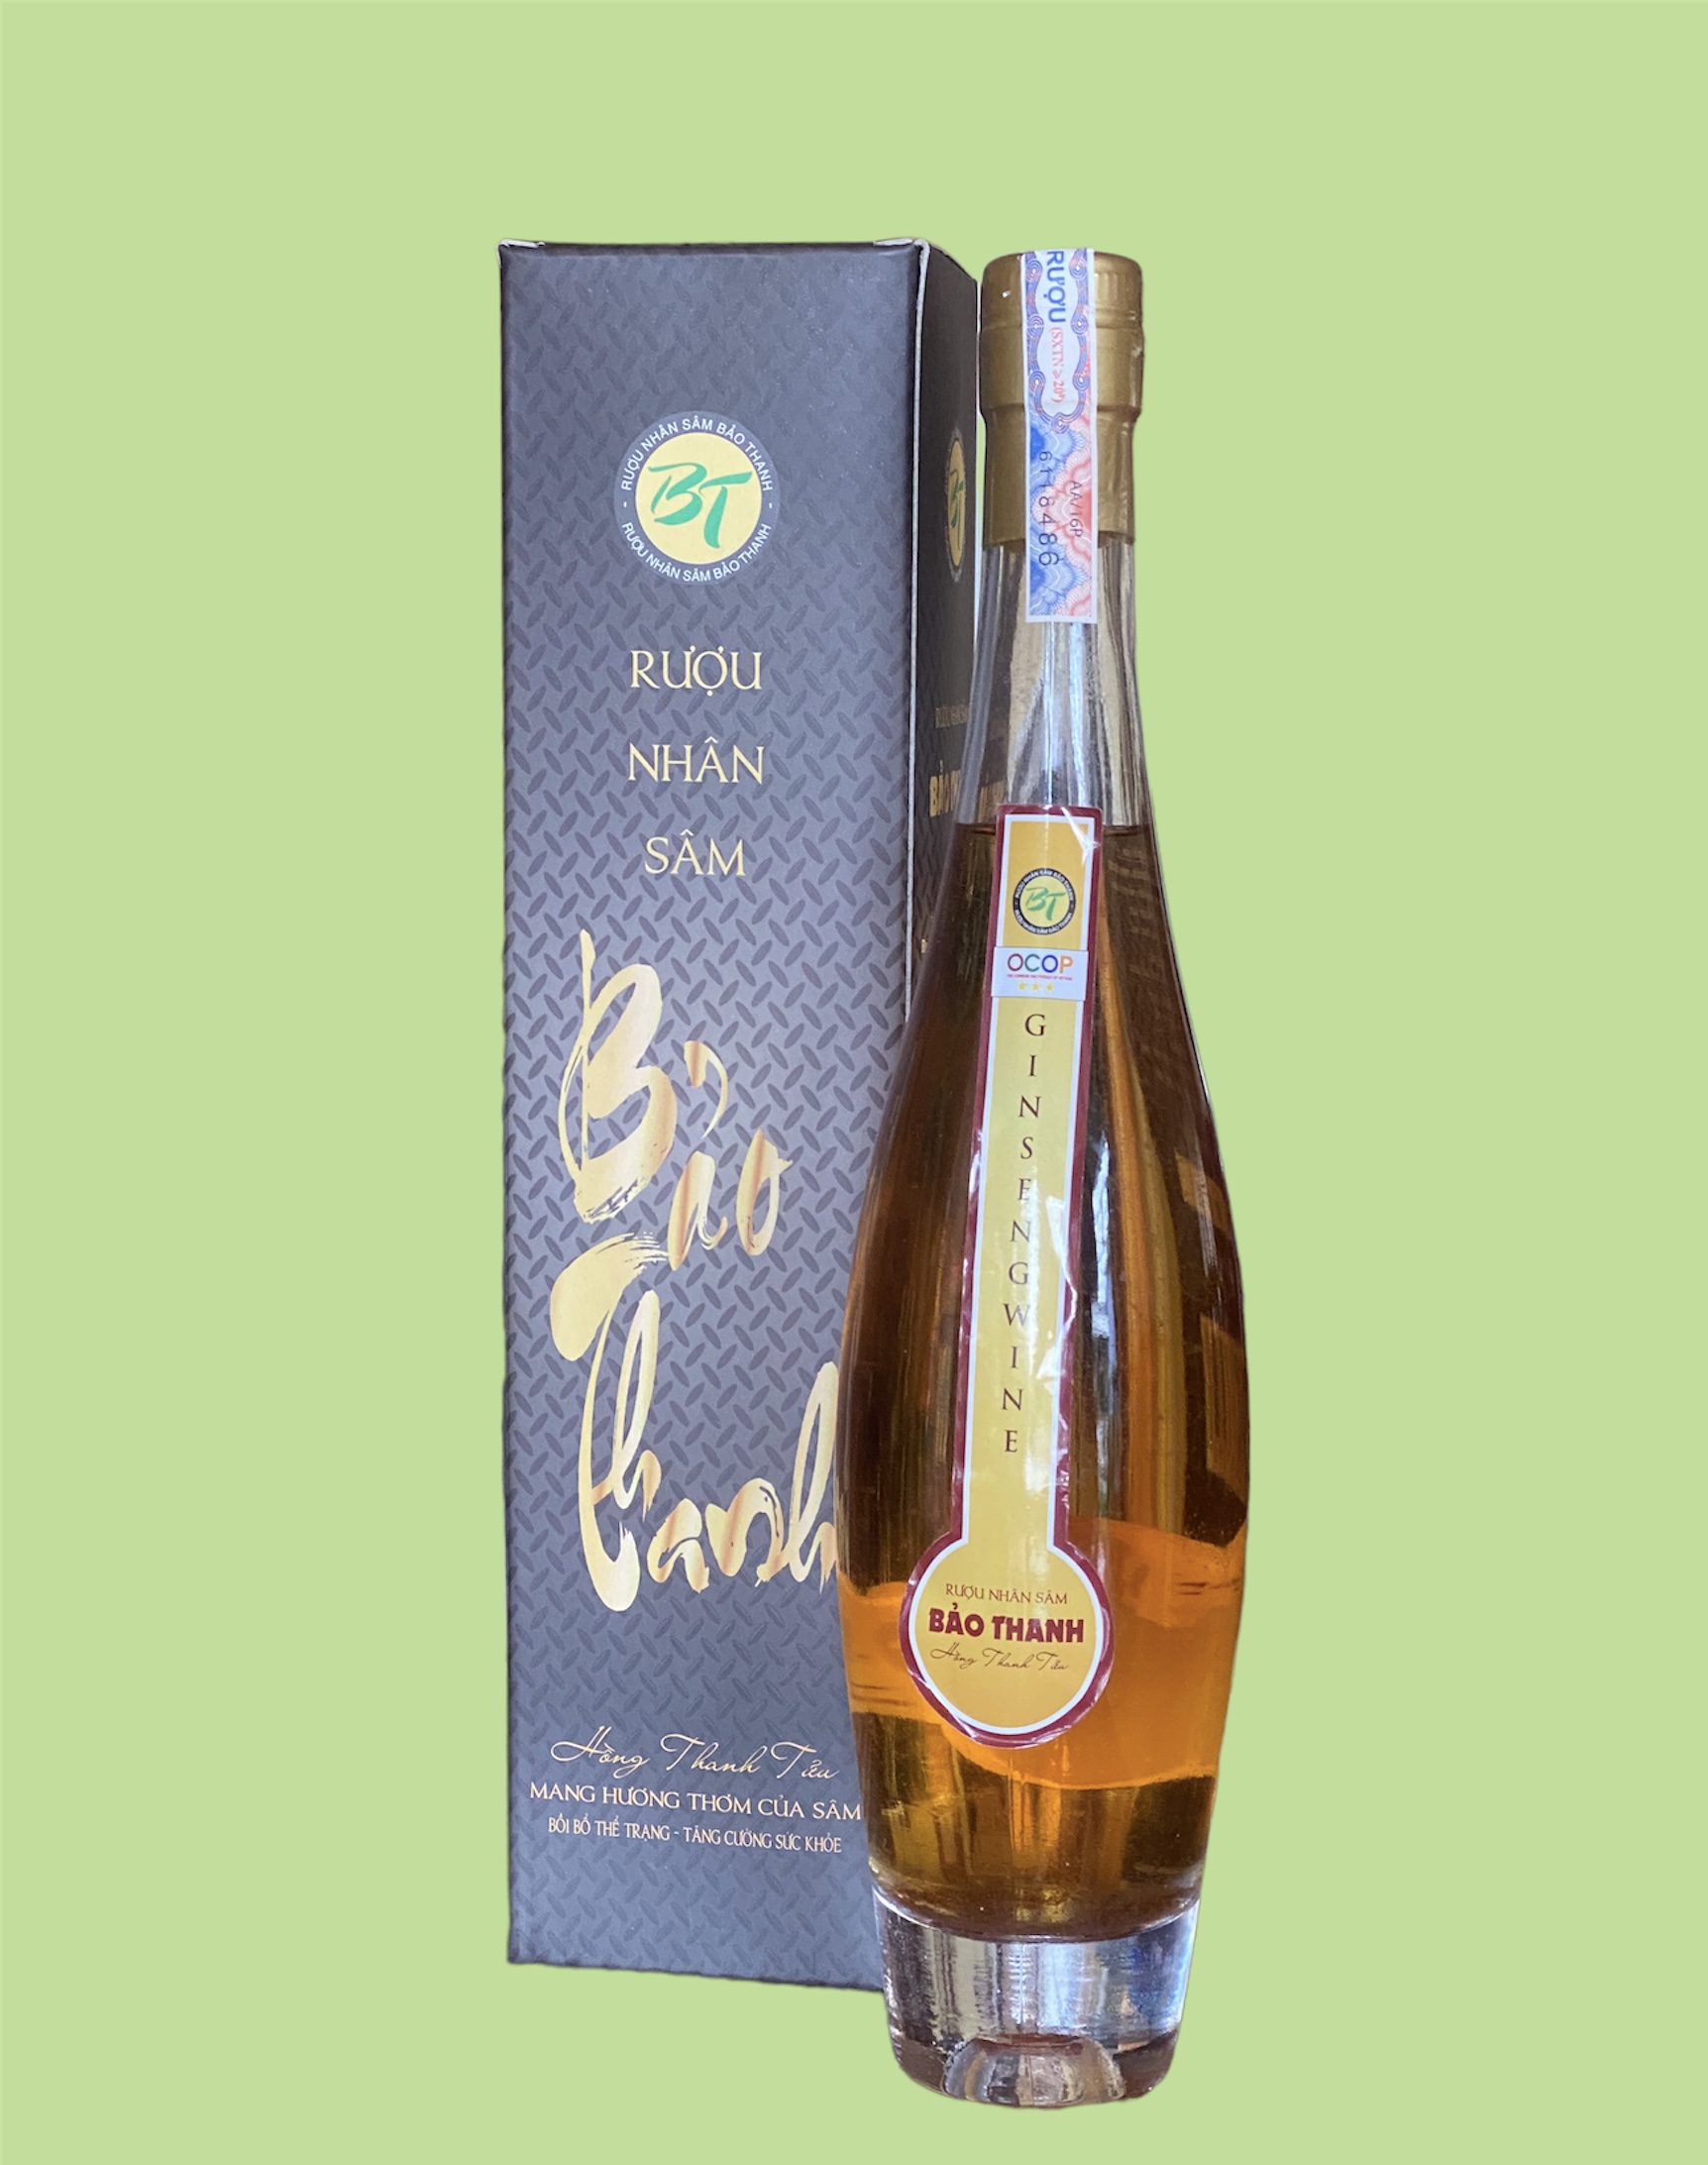 Rượu nhân sâm Bảo Thanh 500ml